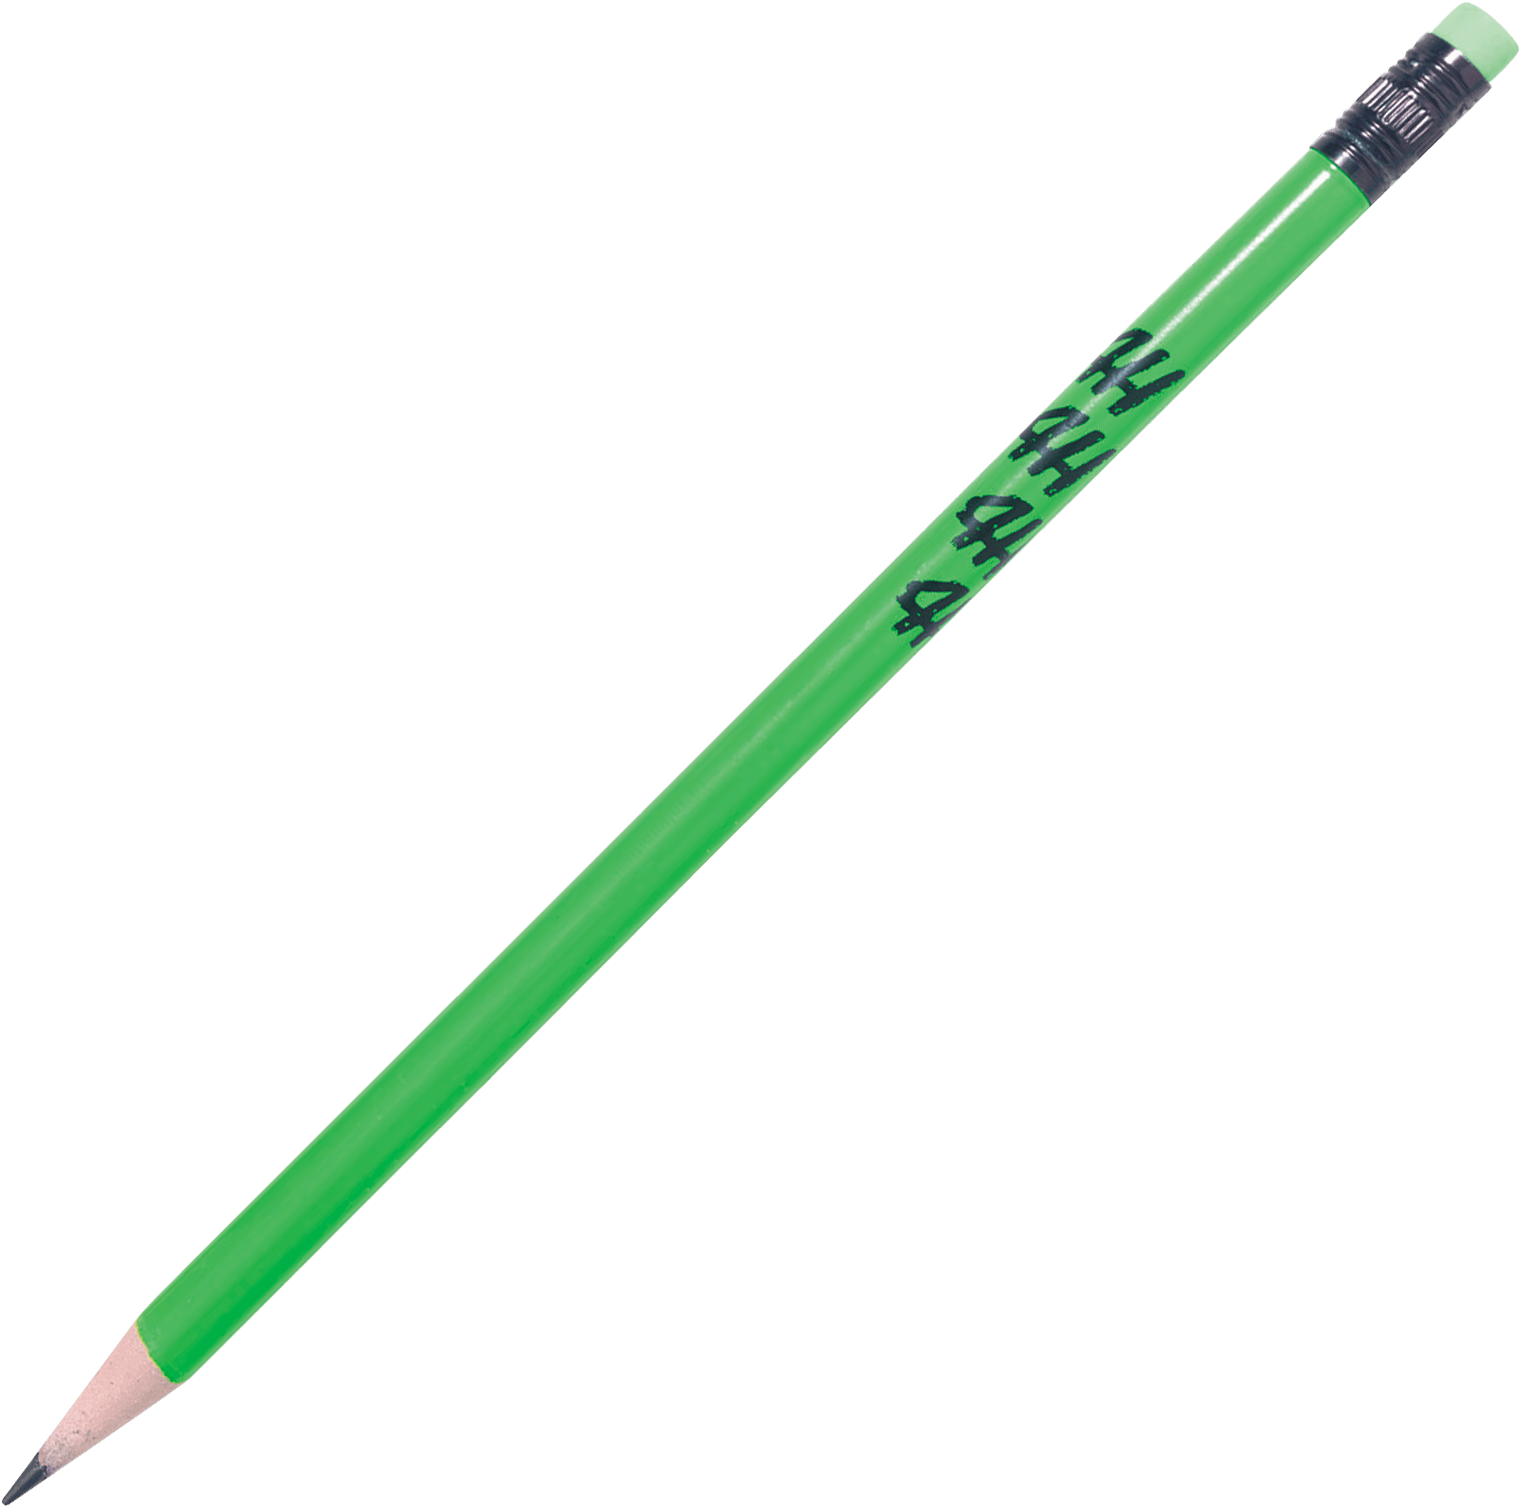 Neon Pencil - Face Paint Brush (1587x1587)